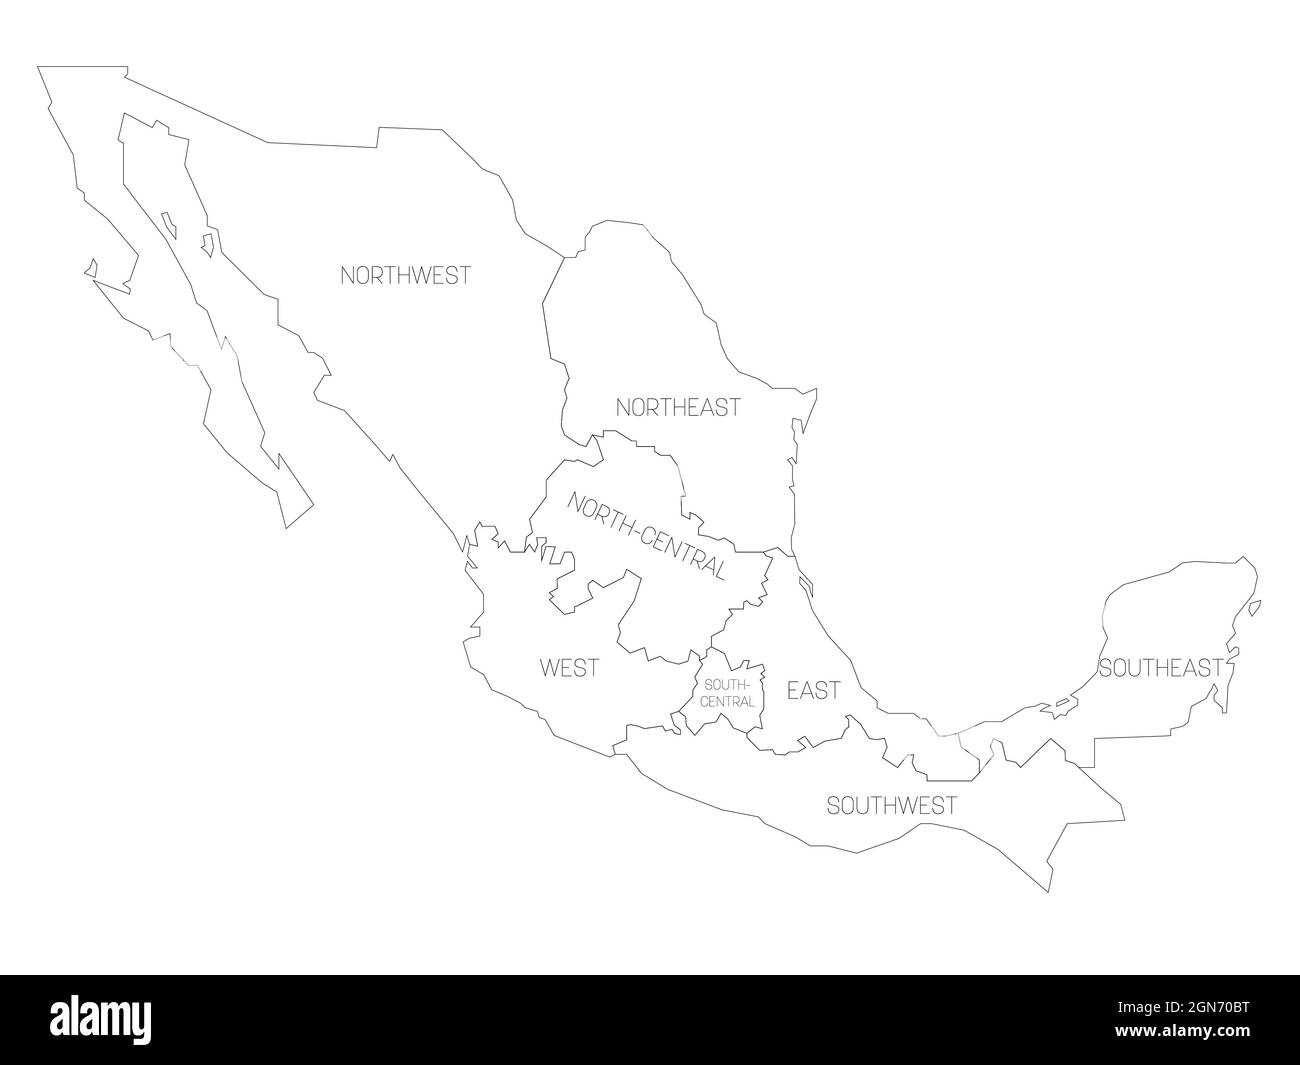 Mappa politica del Messico. Divisioni amministrative - regioni. Semplice mappa vettoriale a contorno nero piatto con etichette. Illustrazione Vettoriale